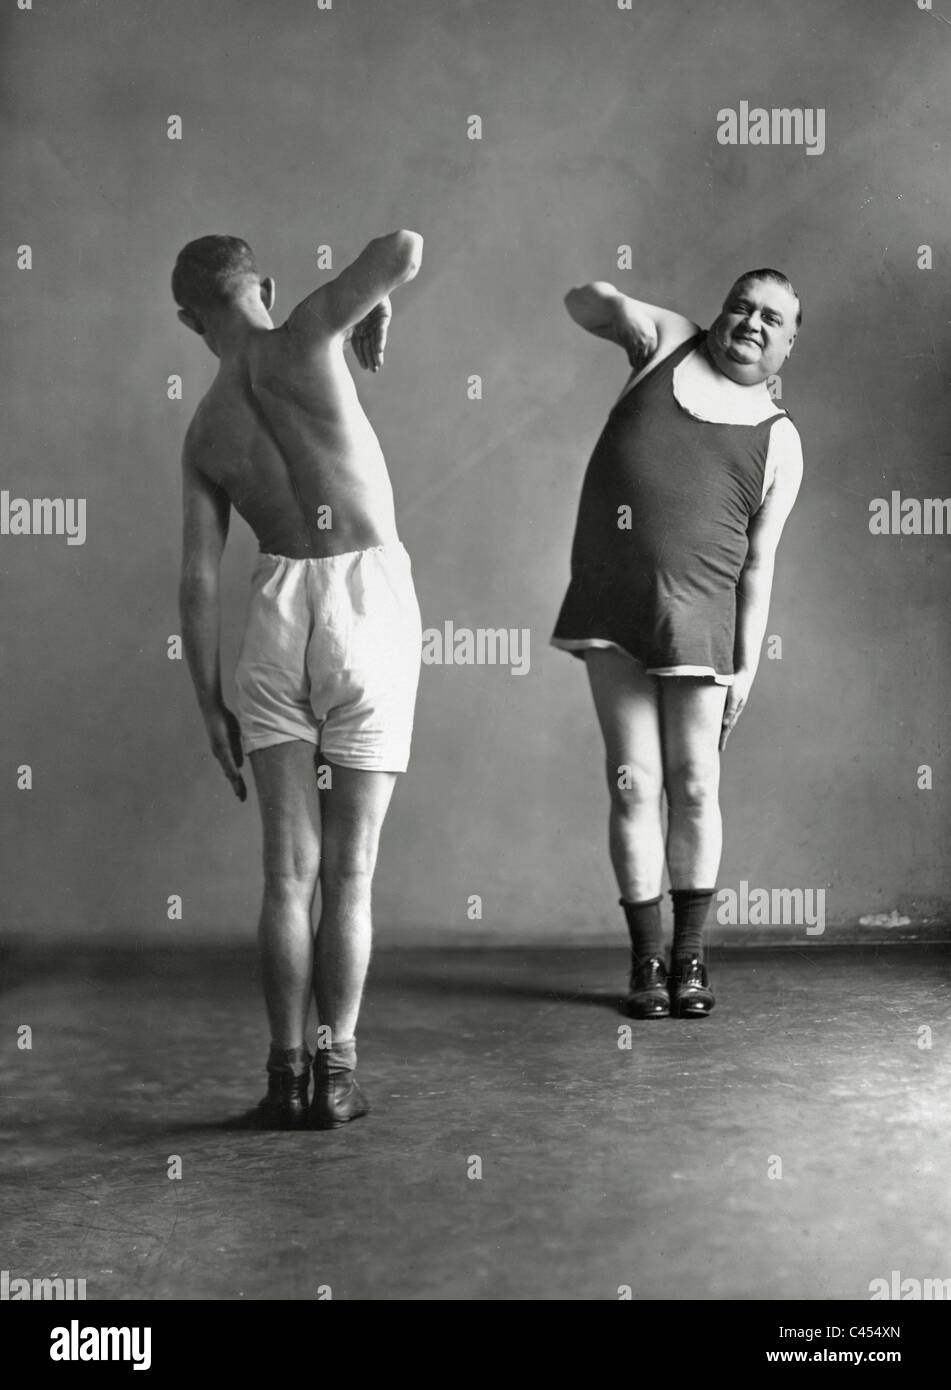 Dos hombres haciendo gimnasia, 1926 Foto de stock